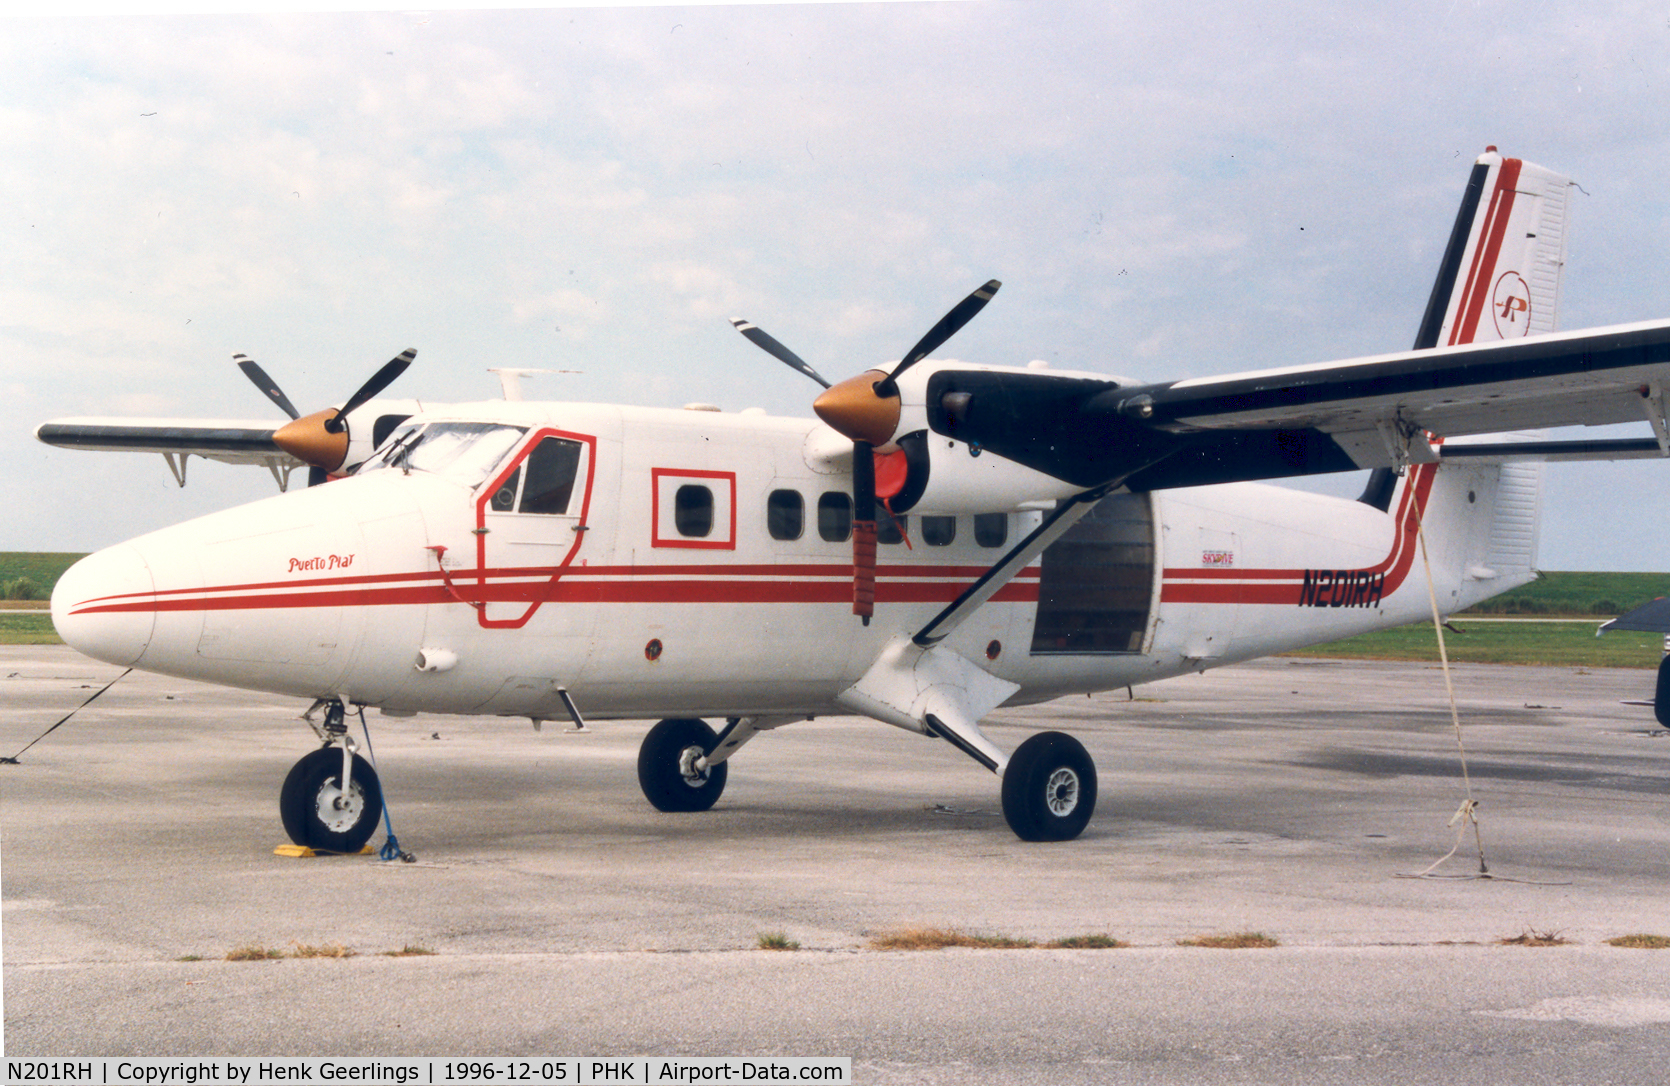 N201RH, 1968 De Havilland Canada DHC-6-200 Twin Otter C/N 163, Skydive Club